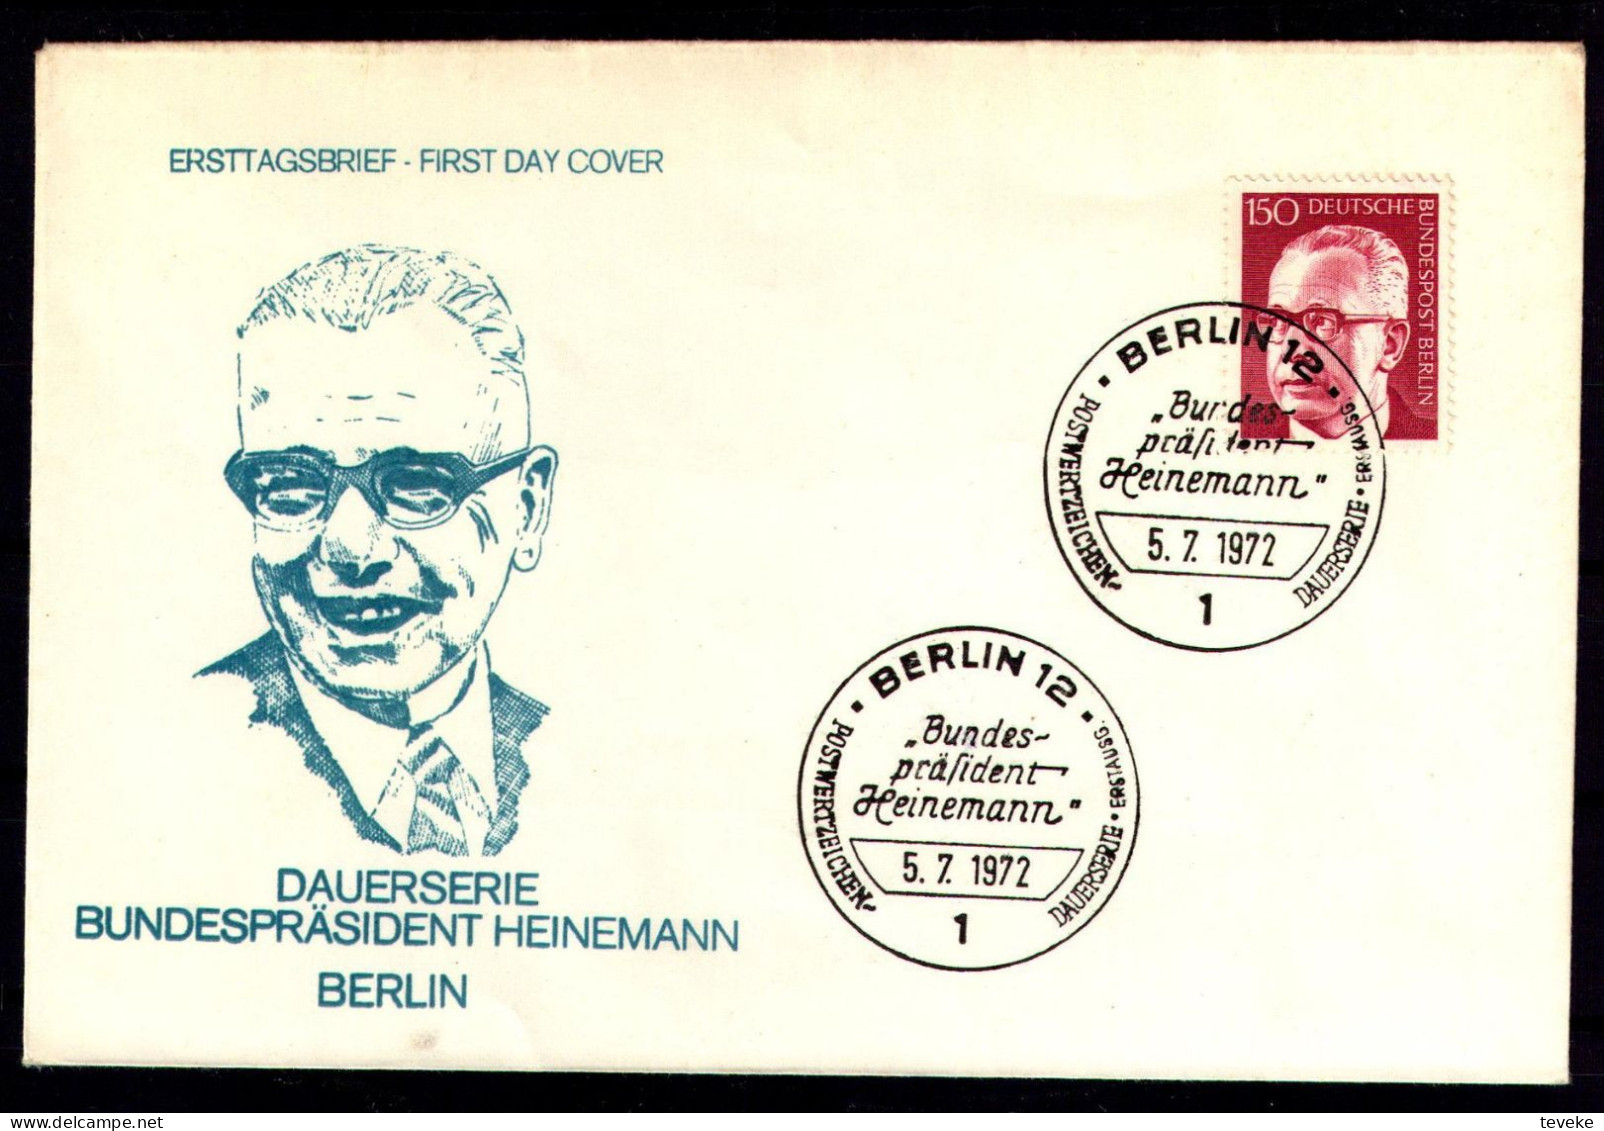 BERLIN 1972 - Michel Nr. 431 - FDC - Bundespräsident Dr. Gustav Heinemann - 1971-1980